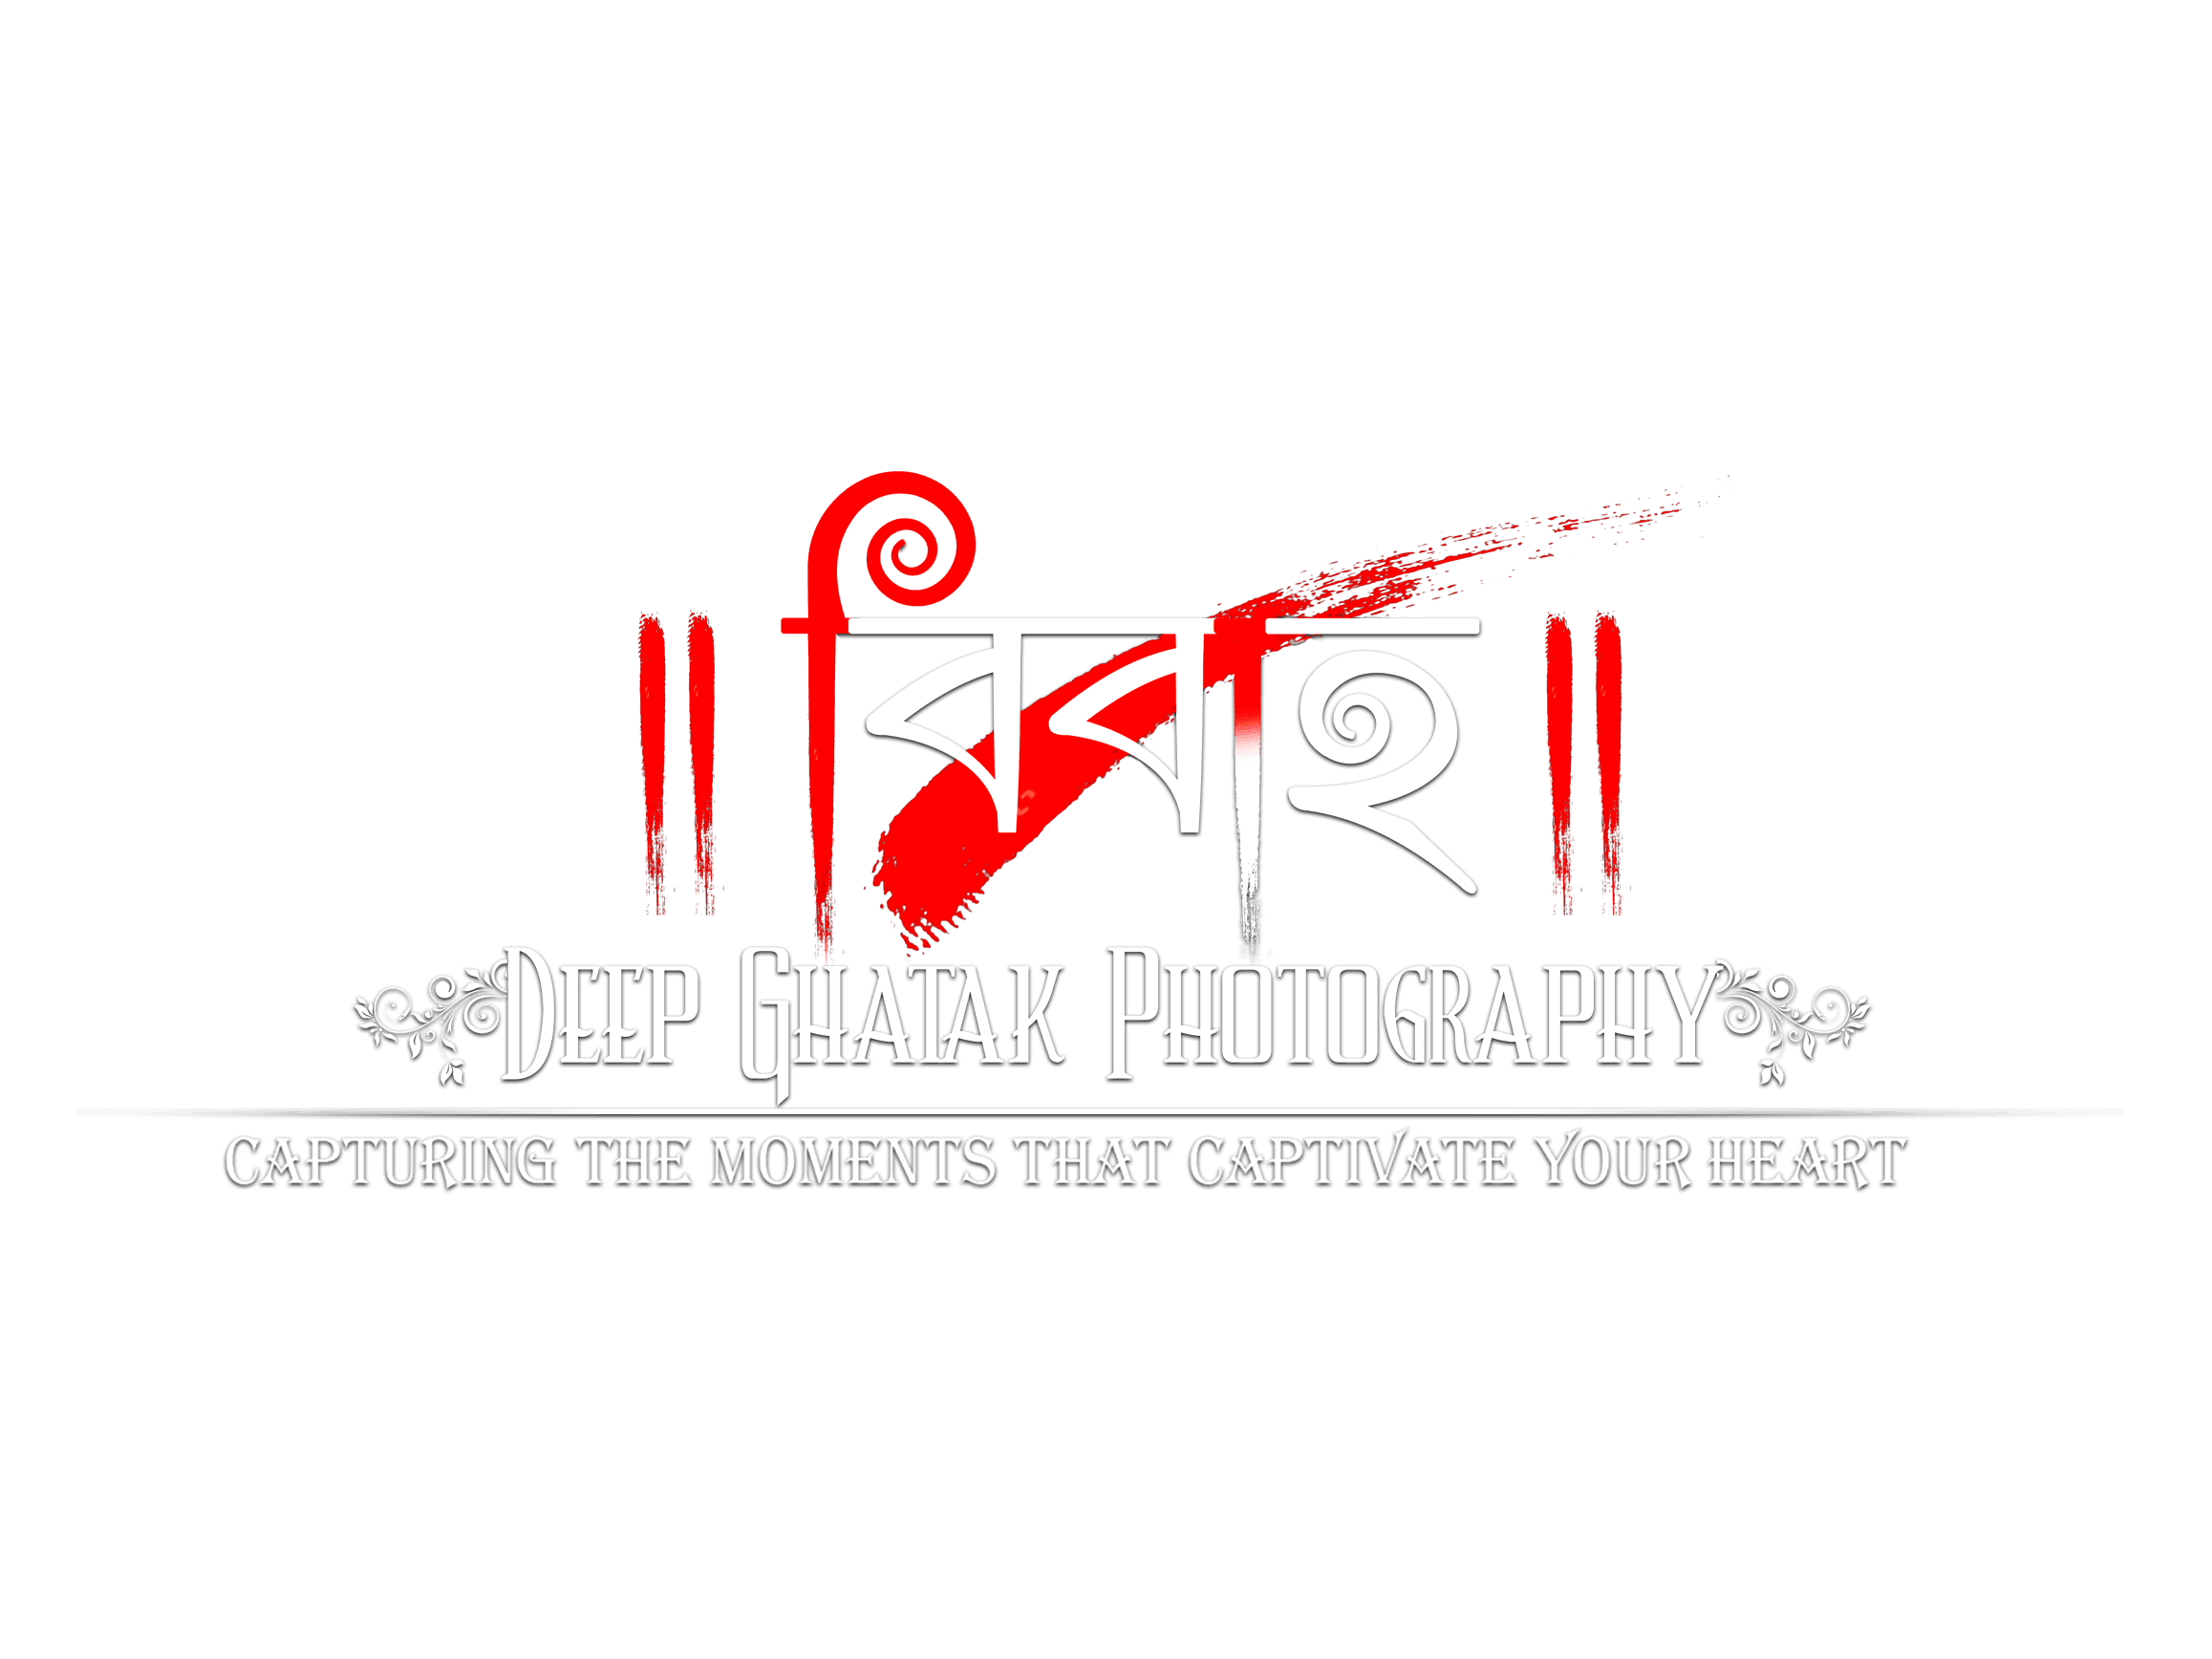 Deep Ghatak Photography